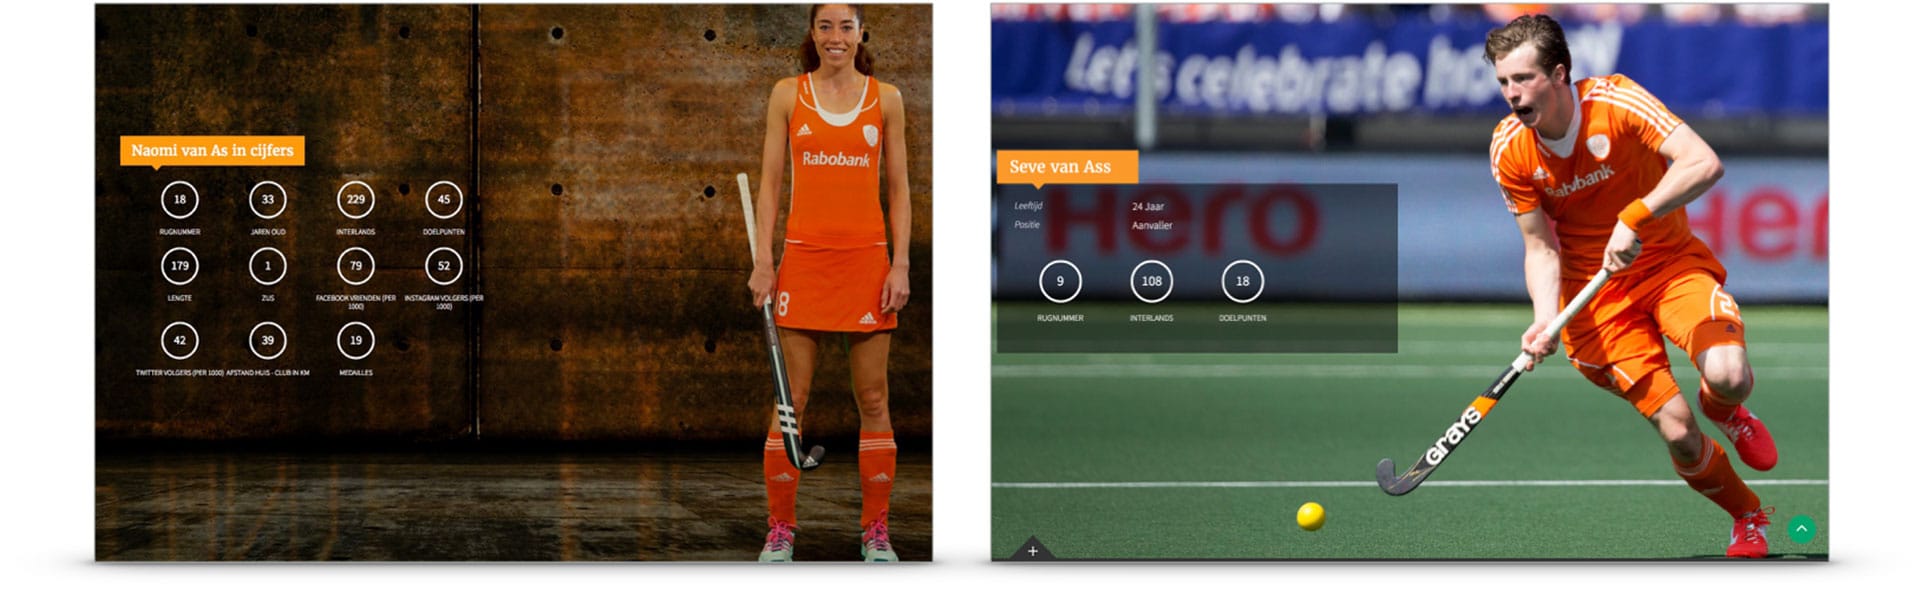 Hockey.nl: Digital design website